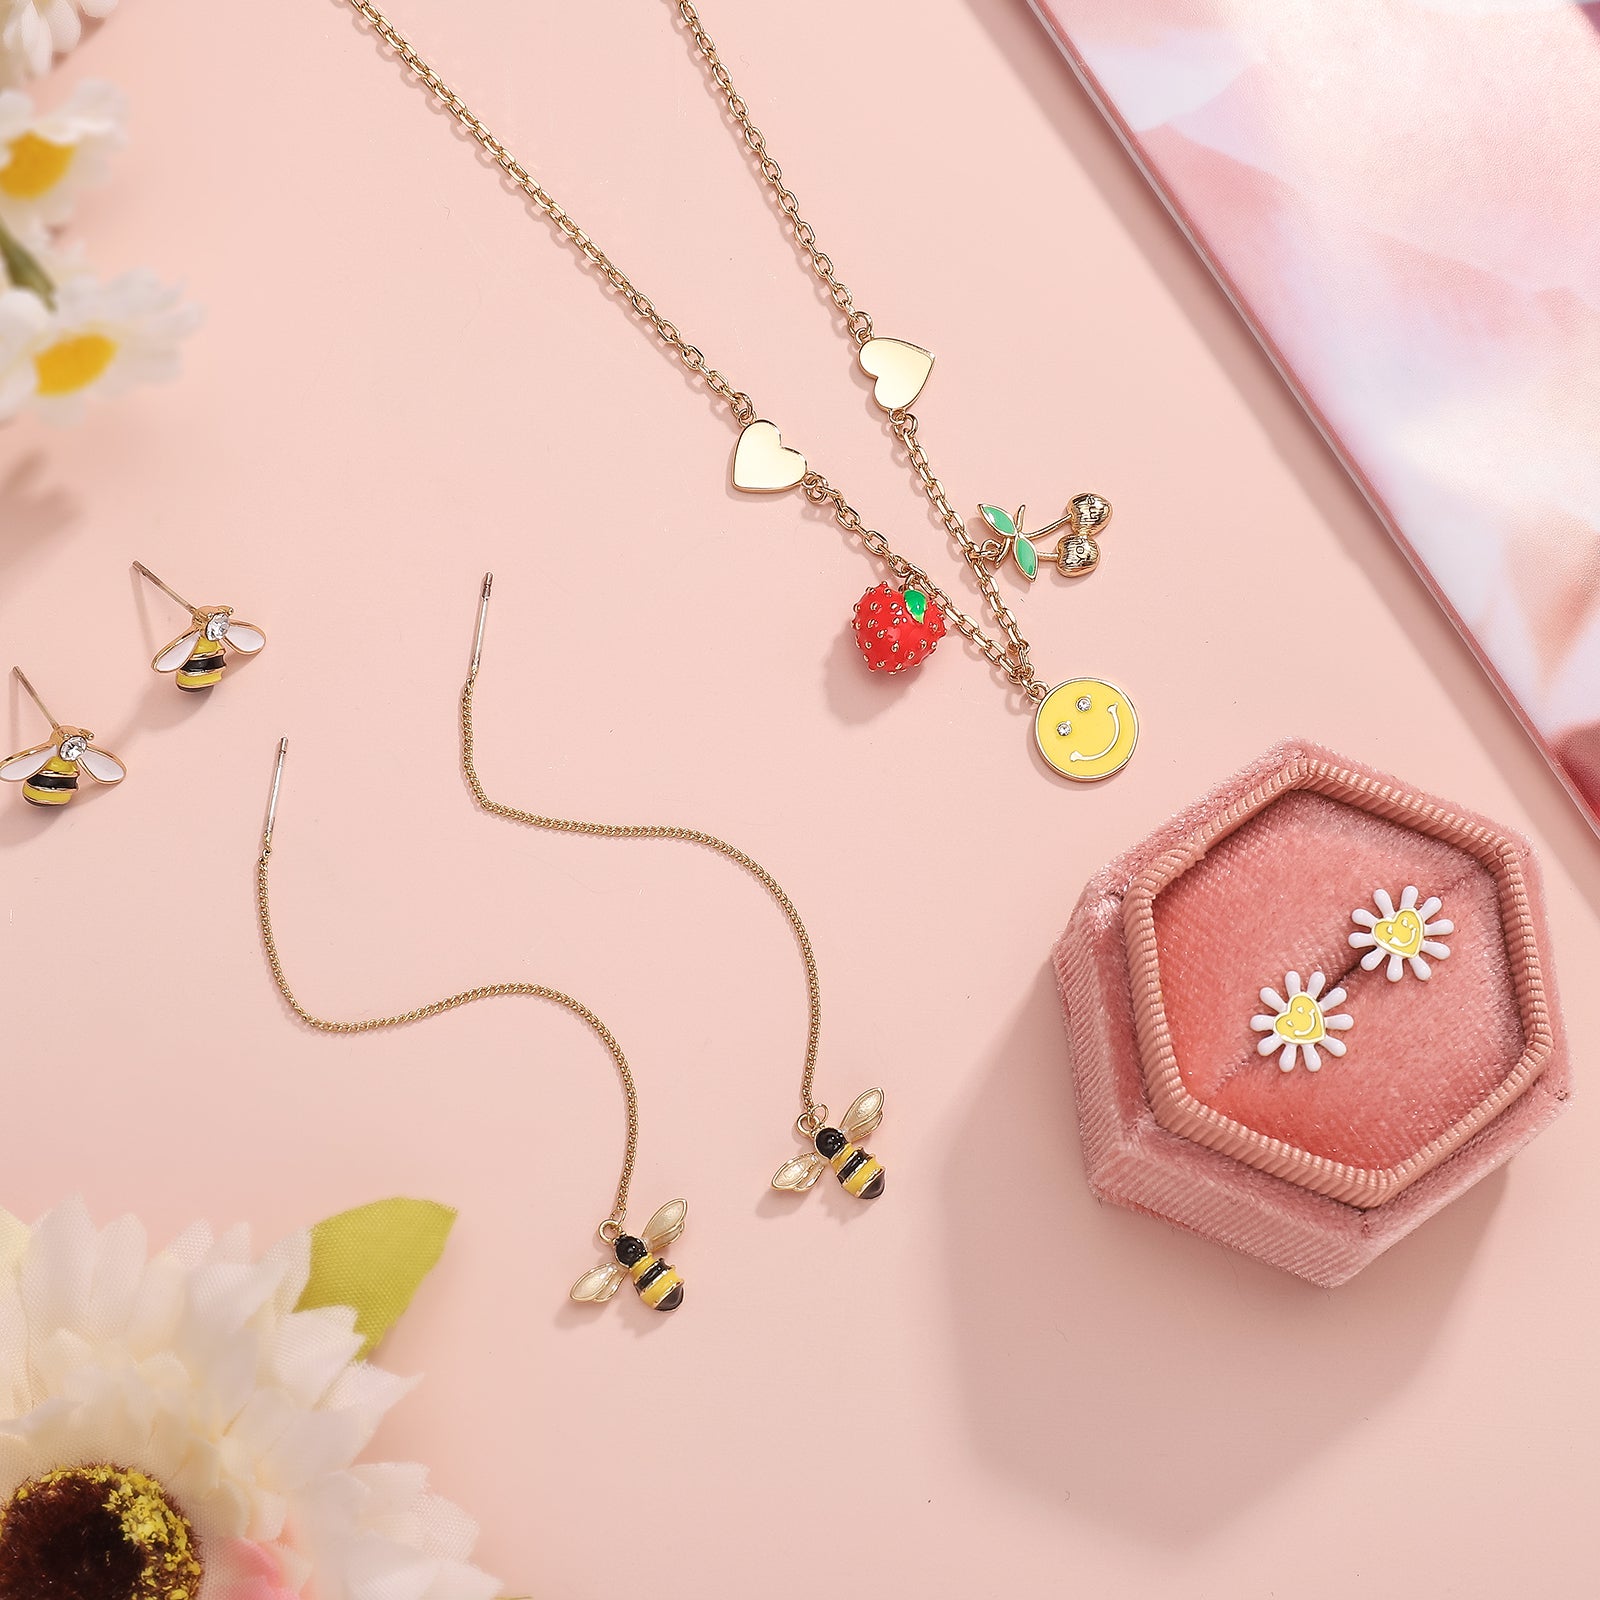  Strawberry Necklace Jewelry Set